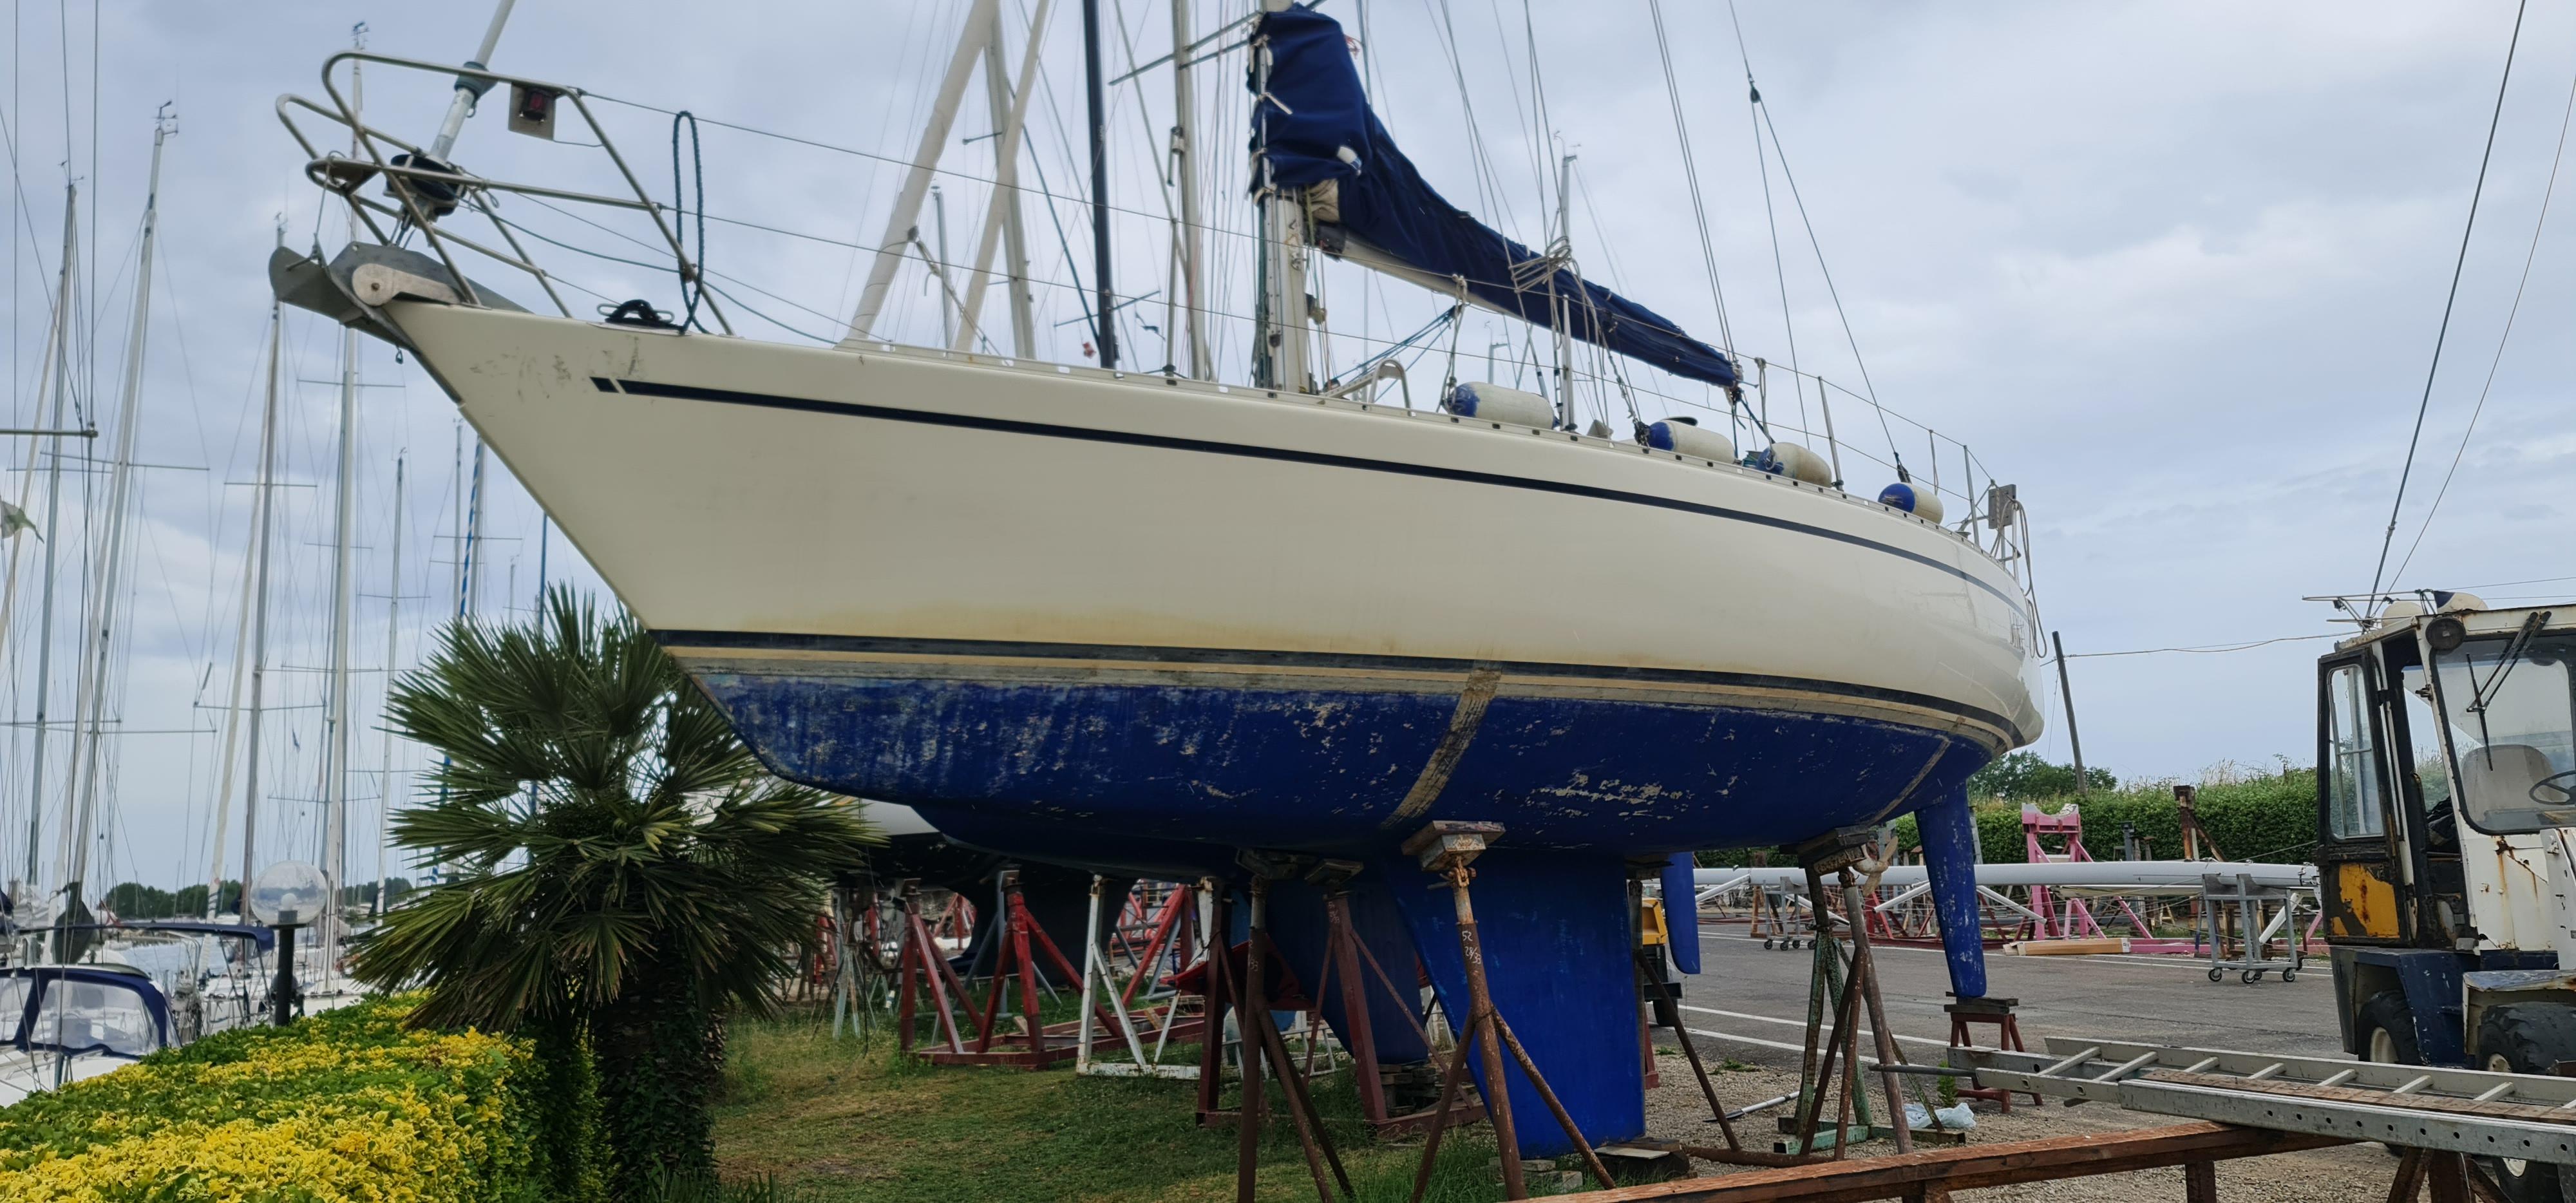 1983 Pelle Petterson maxi yacht 35